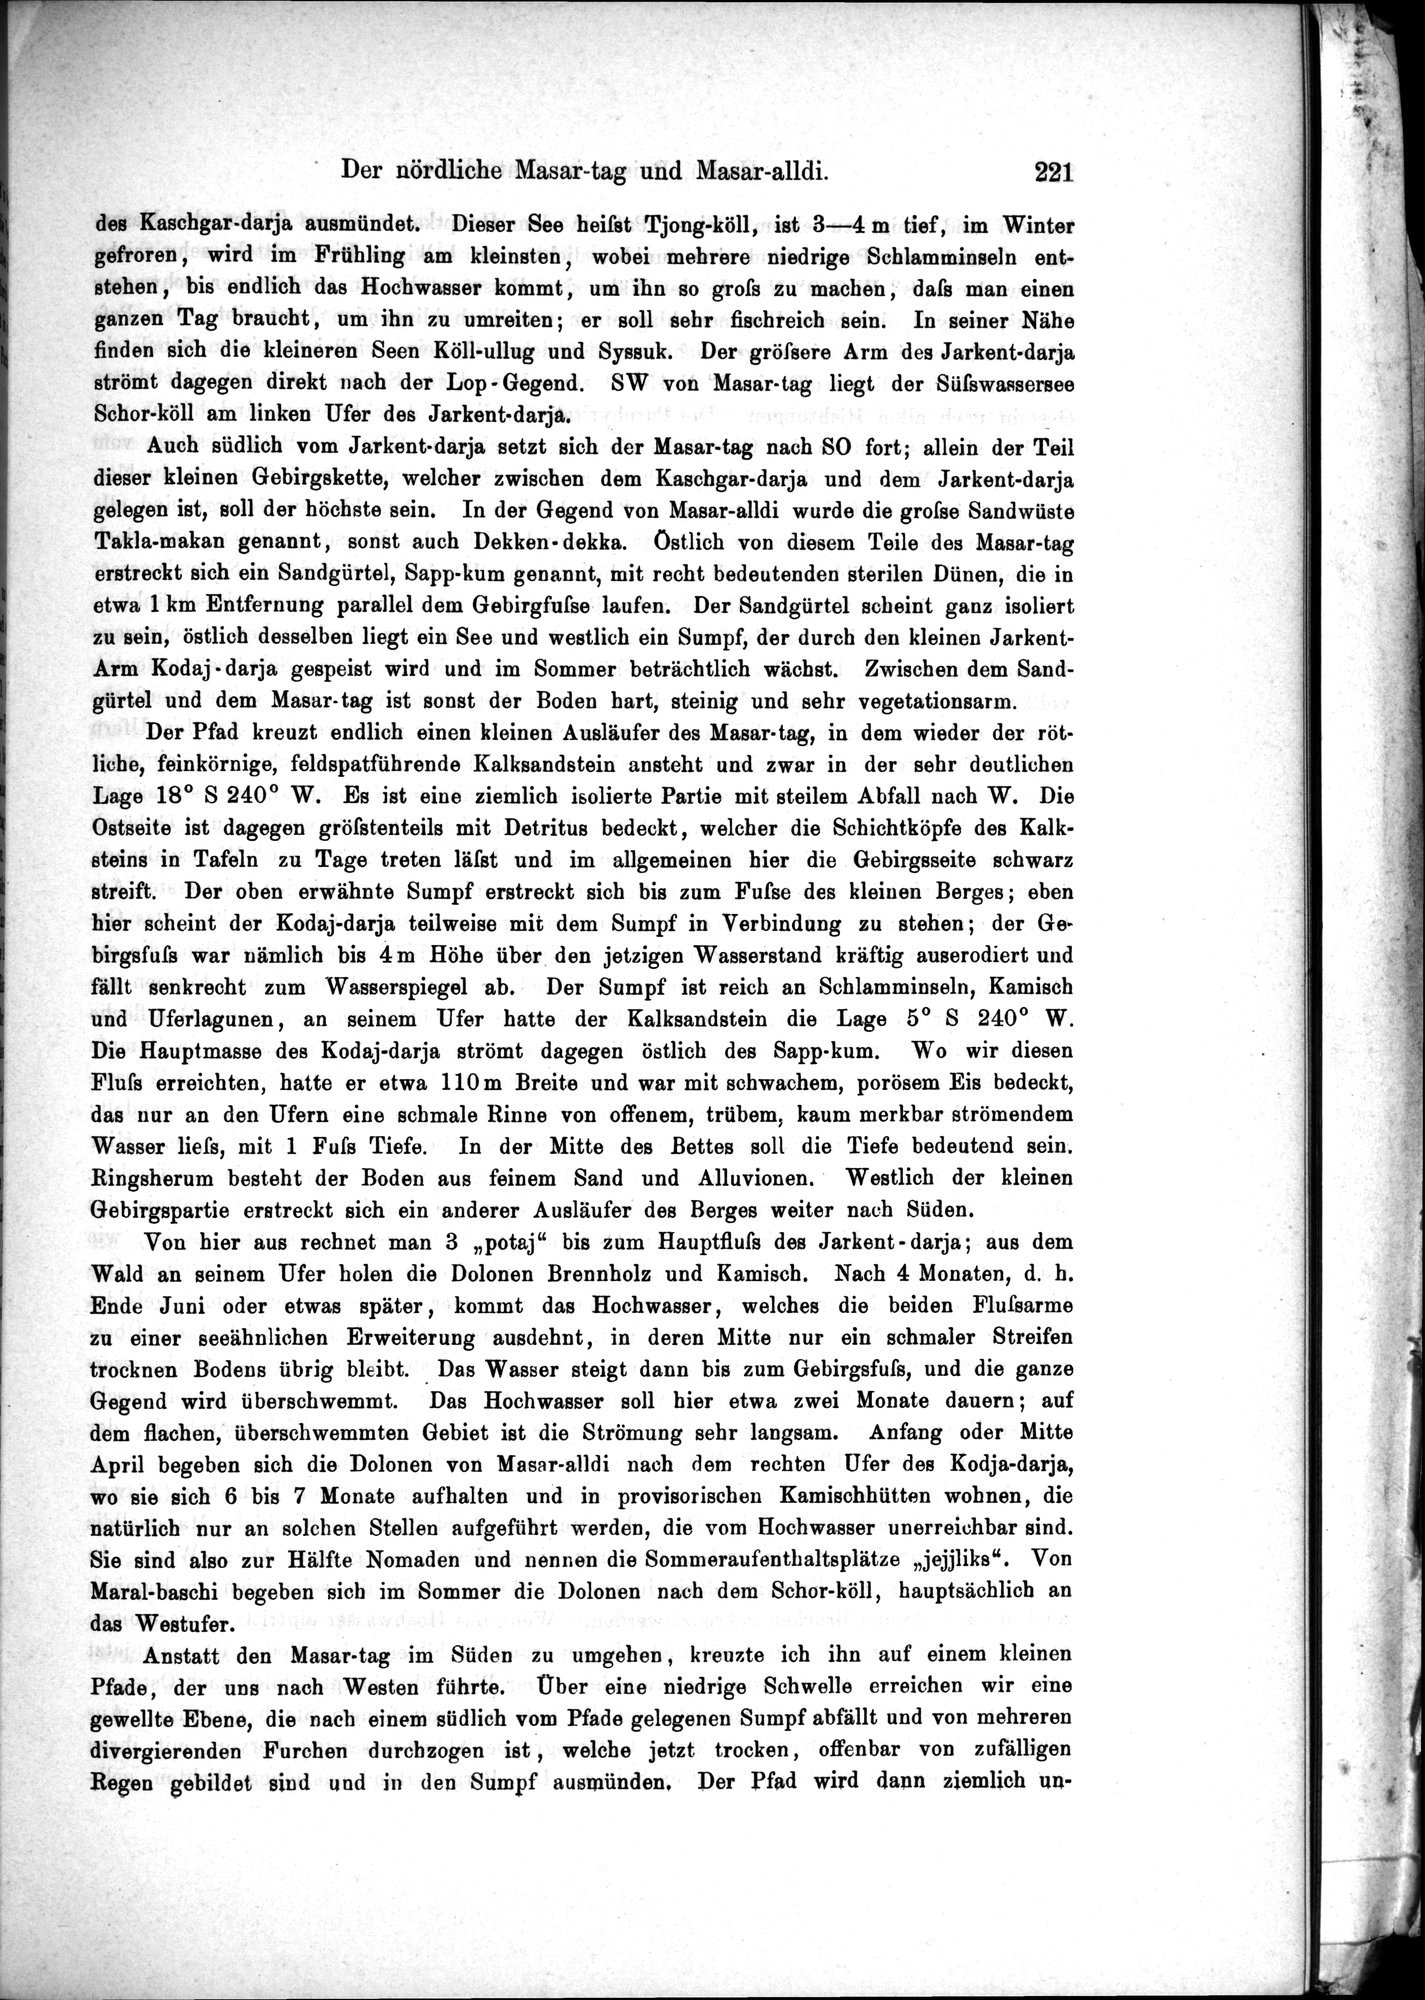 Die Geographische-Wissenschaftlichen Ergebnisse meiner Reisen in Zentralasien, 1894-1897 : vol.1 / Page 233 (Grayscale High Resolution Image)